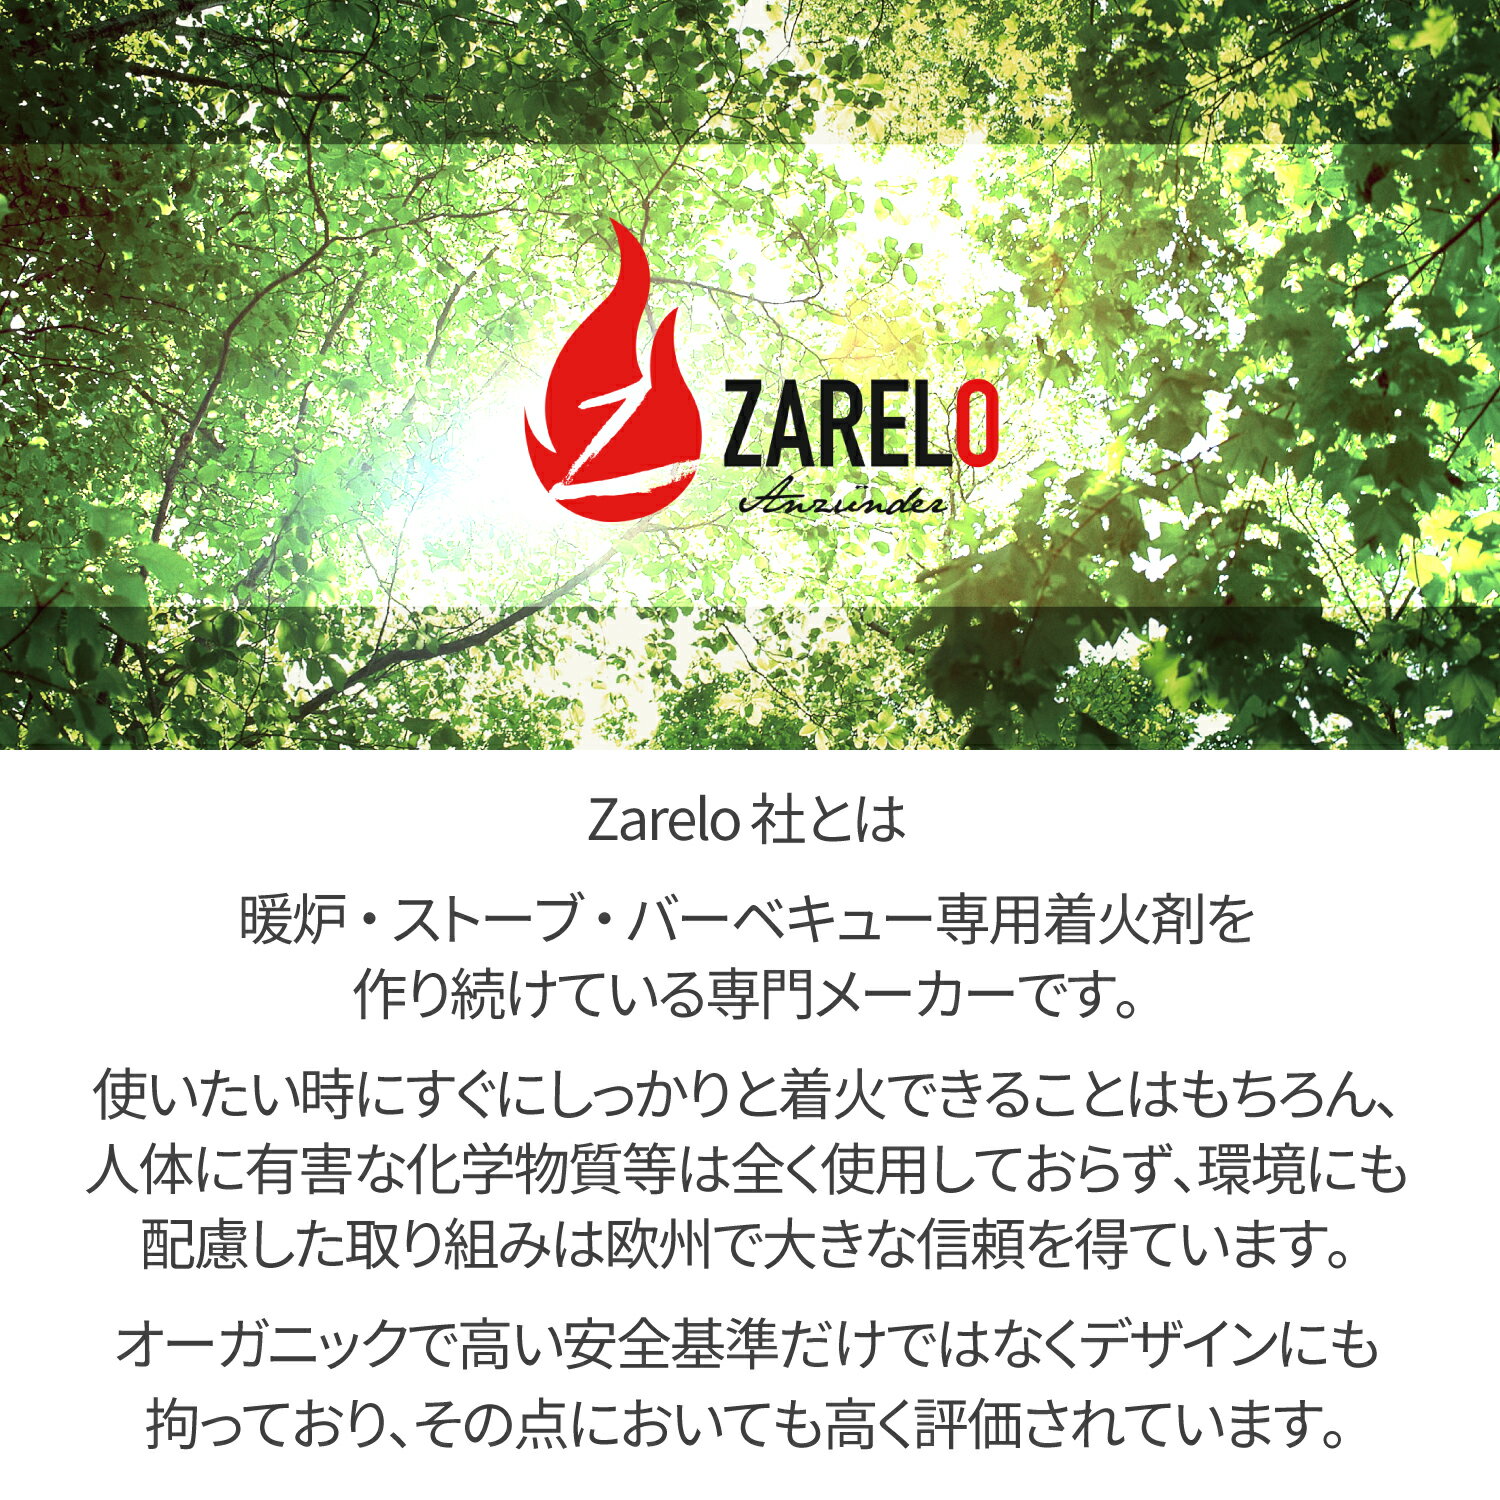 【あす楽対応】ZARELO(ザレロ) 着火剤 FIRE CURLS オーガニック エコ 永年保管可能 化学物質なし 簡単 キャンプ用品 アウトドア バーベキュー 薪ストーブ ファイヤースティック ファイヤースターター